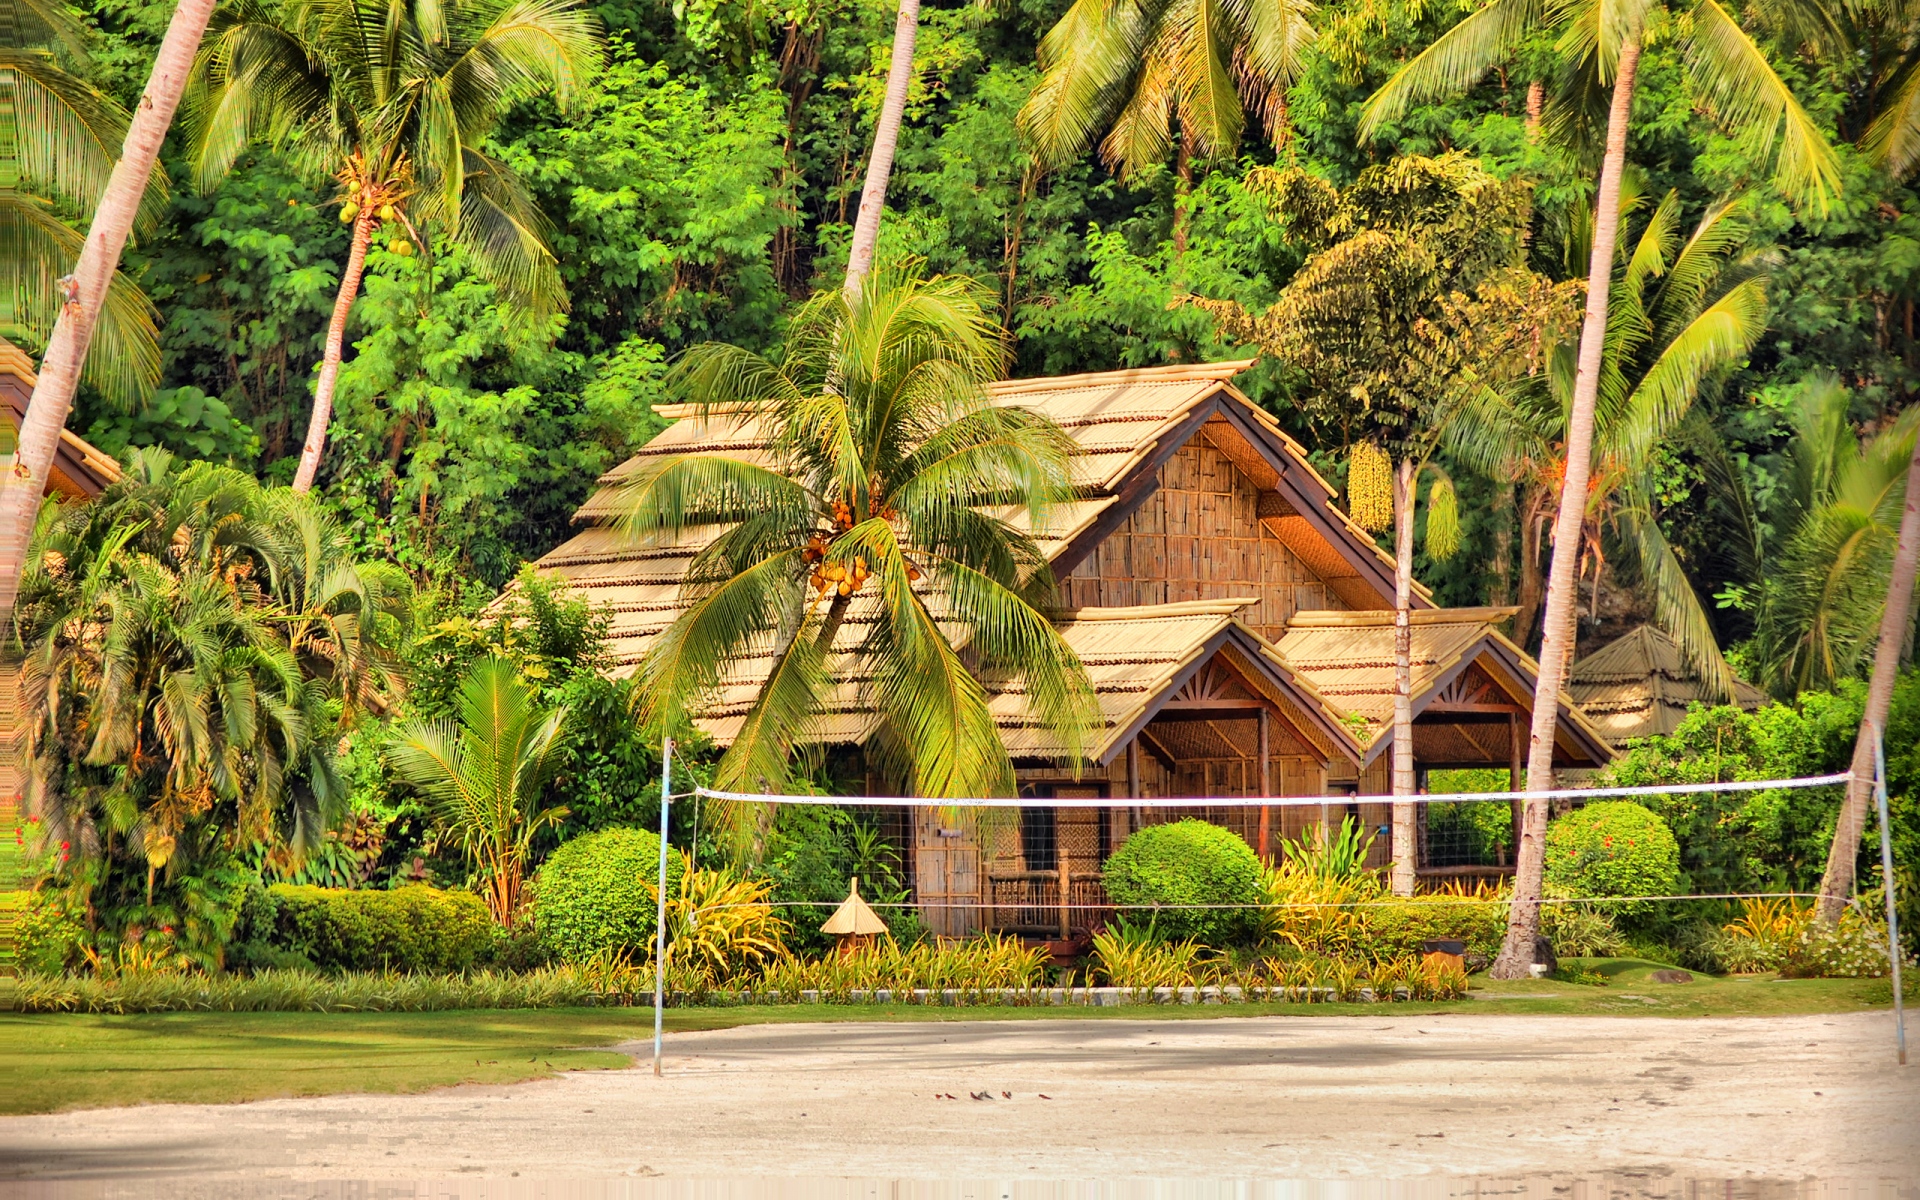 Картинки Филиппины, Самал, остров, пальмы, хижины, бунгало фото и обои на рабочий стол